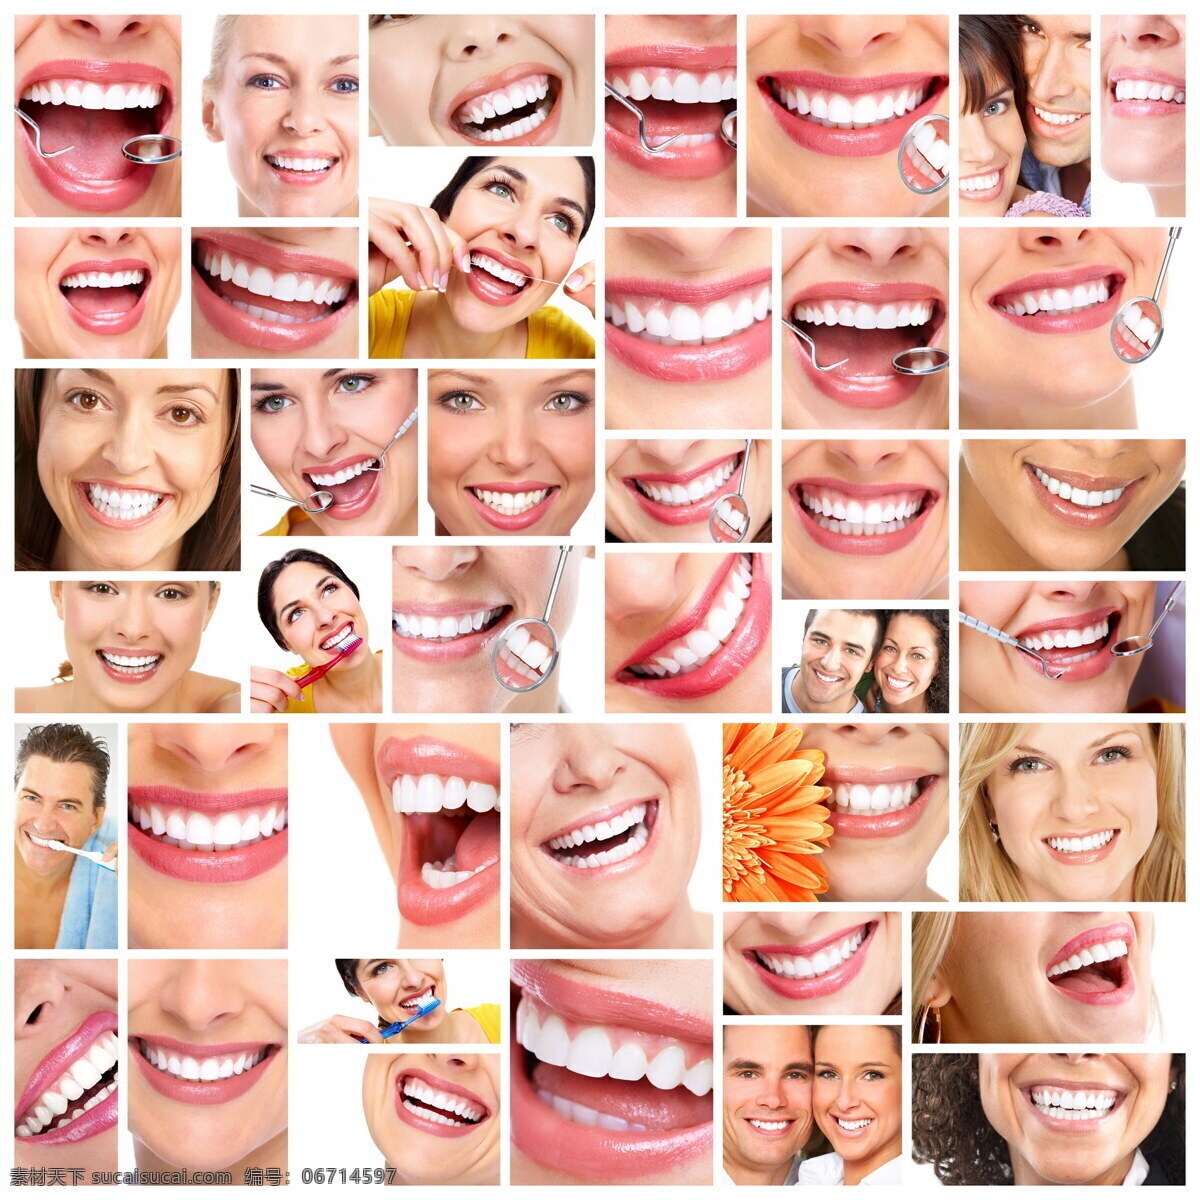 各种 牙齿 广告 健康牙齿 洁白牙齿 微笑 健康牙齿图片 刷牙 保护牙齿 牙科医院 牙齿检查 牙齿健康 人体器官 医疗护理 现代科技